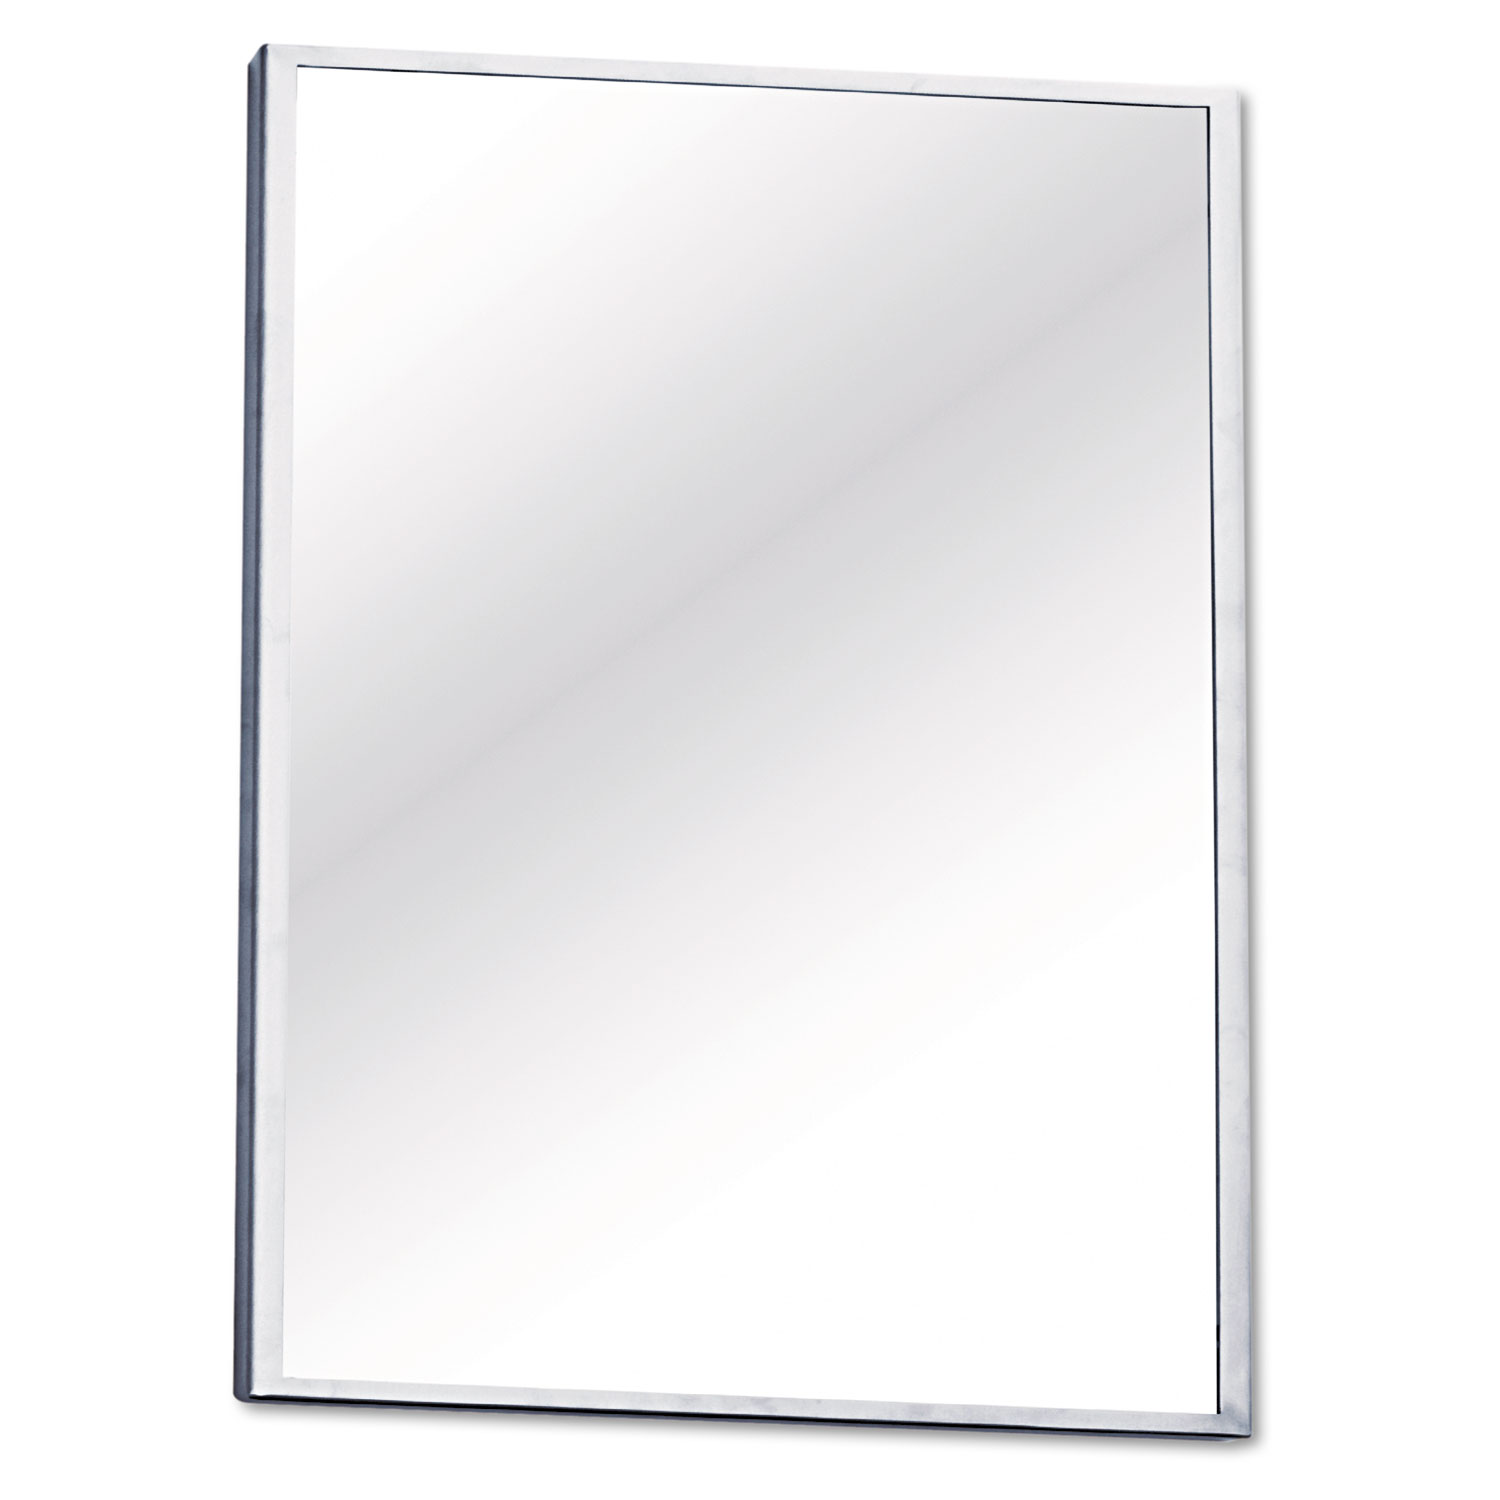 Wall/Lavatory Mirror, 26w x 18 h